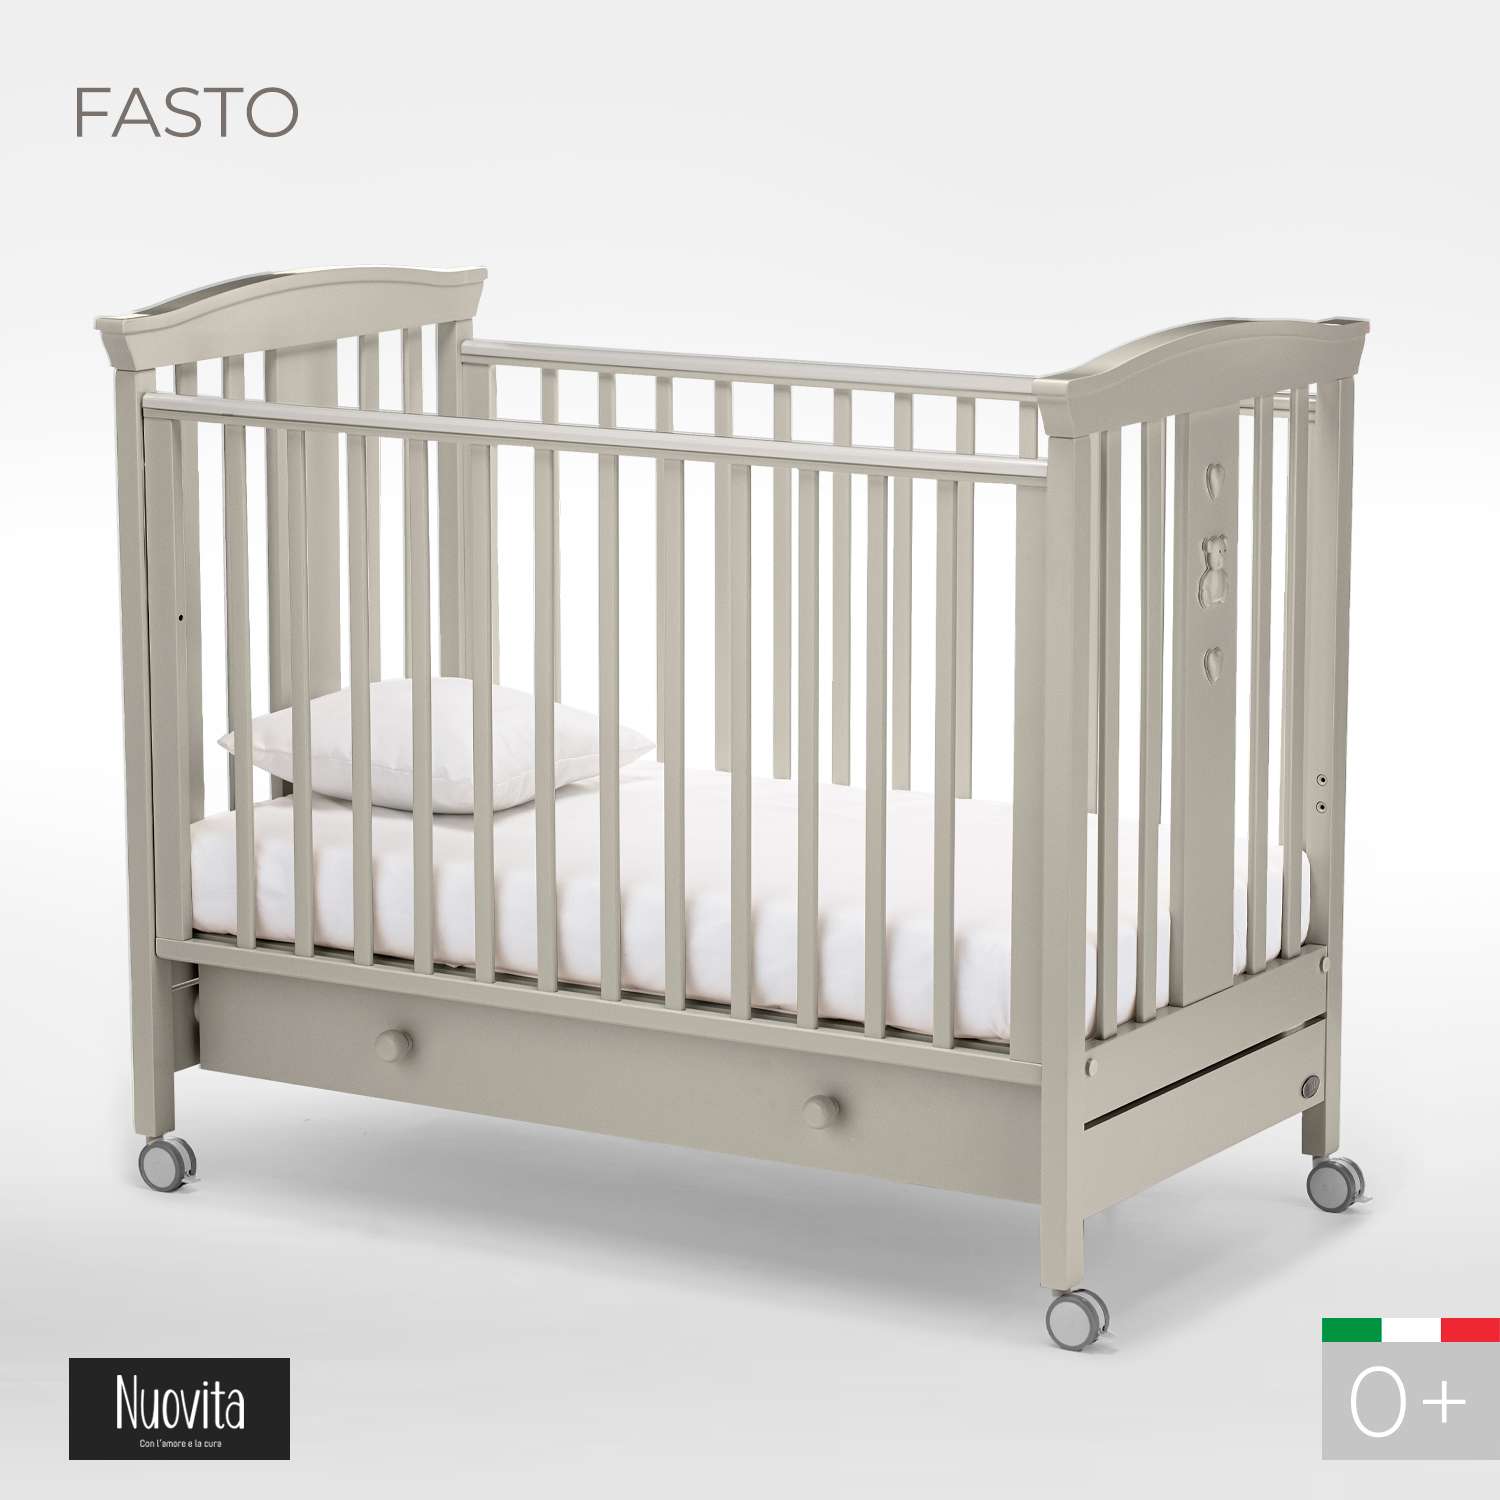 Детская кроватка Nuovita Fasto прямоугольная, (серый) - фото 2